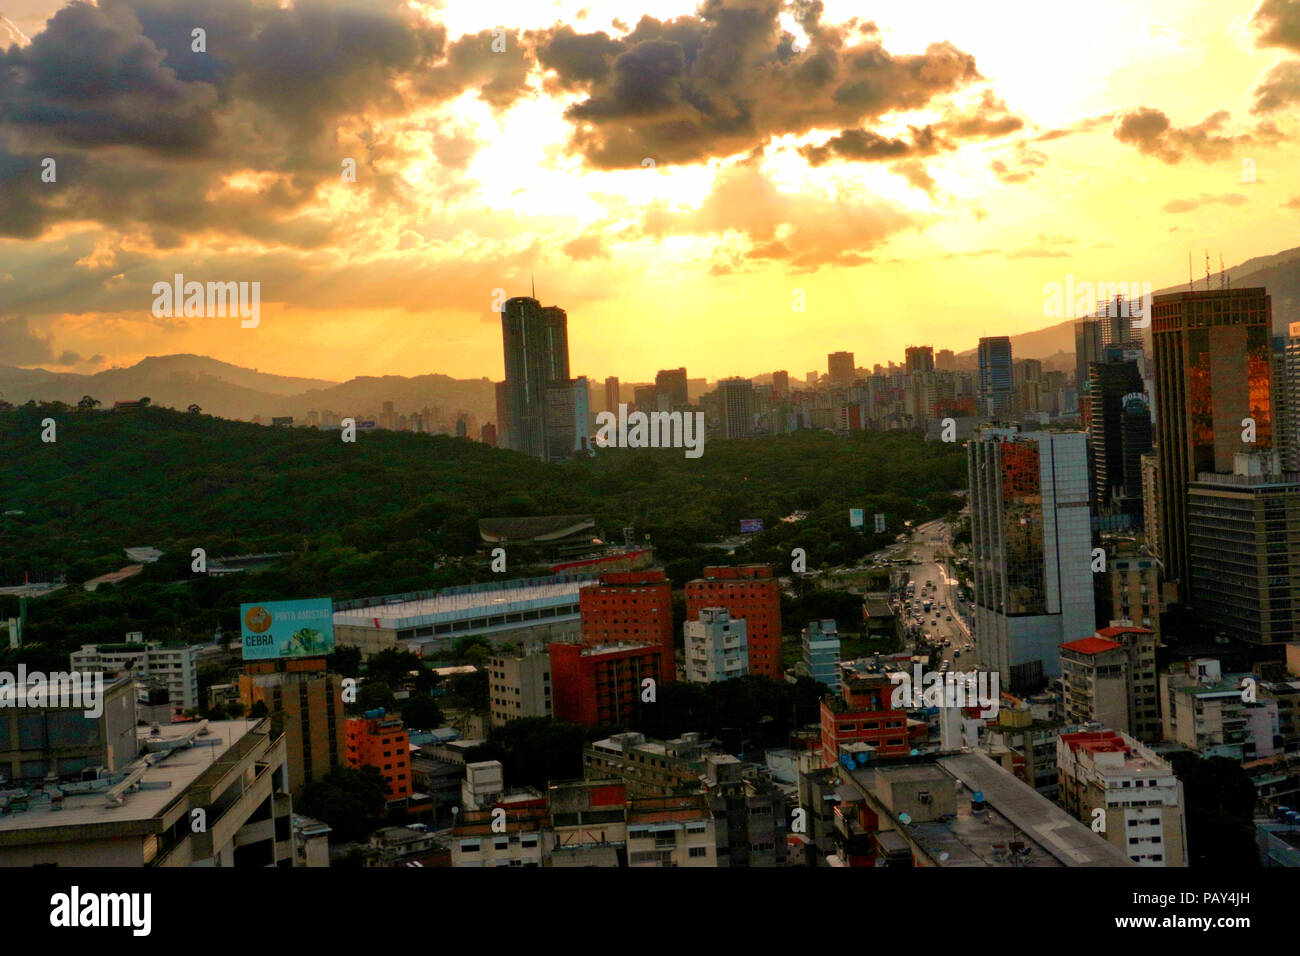 Sabana Grande Caracas Venezuela, Business District in the Metropolitan Area. Vicente Quintero and Marcos Kirschstein Stock Photo